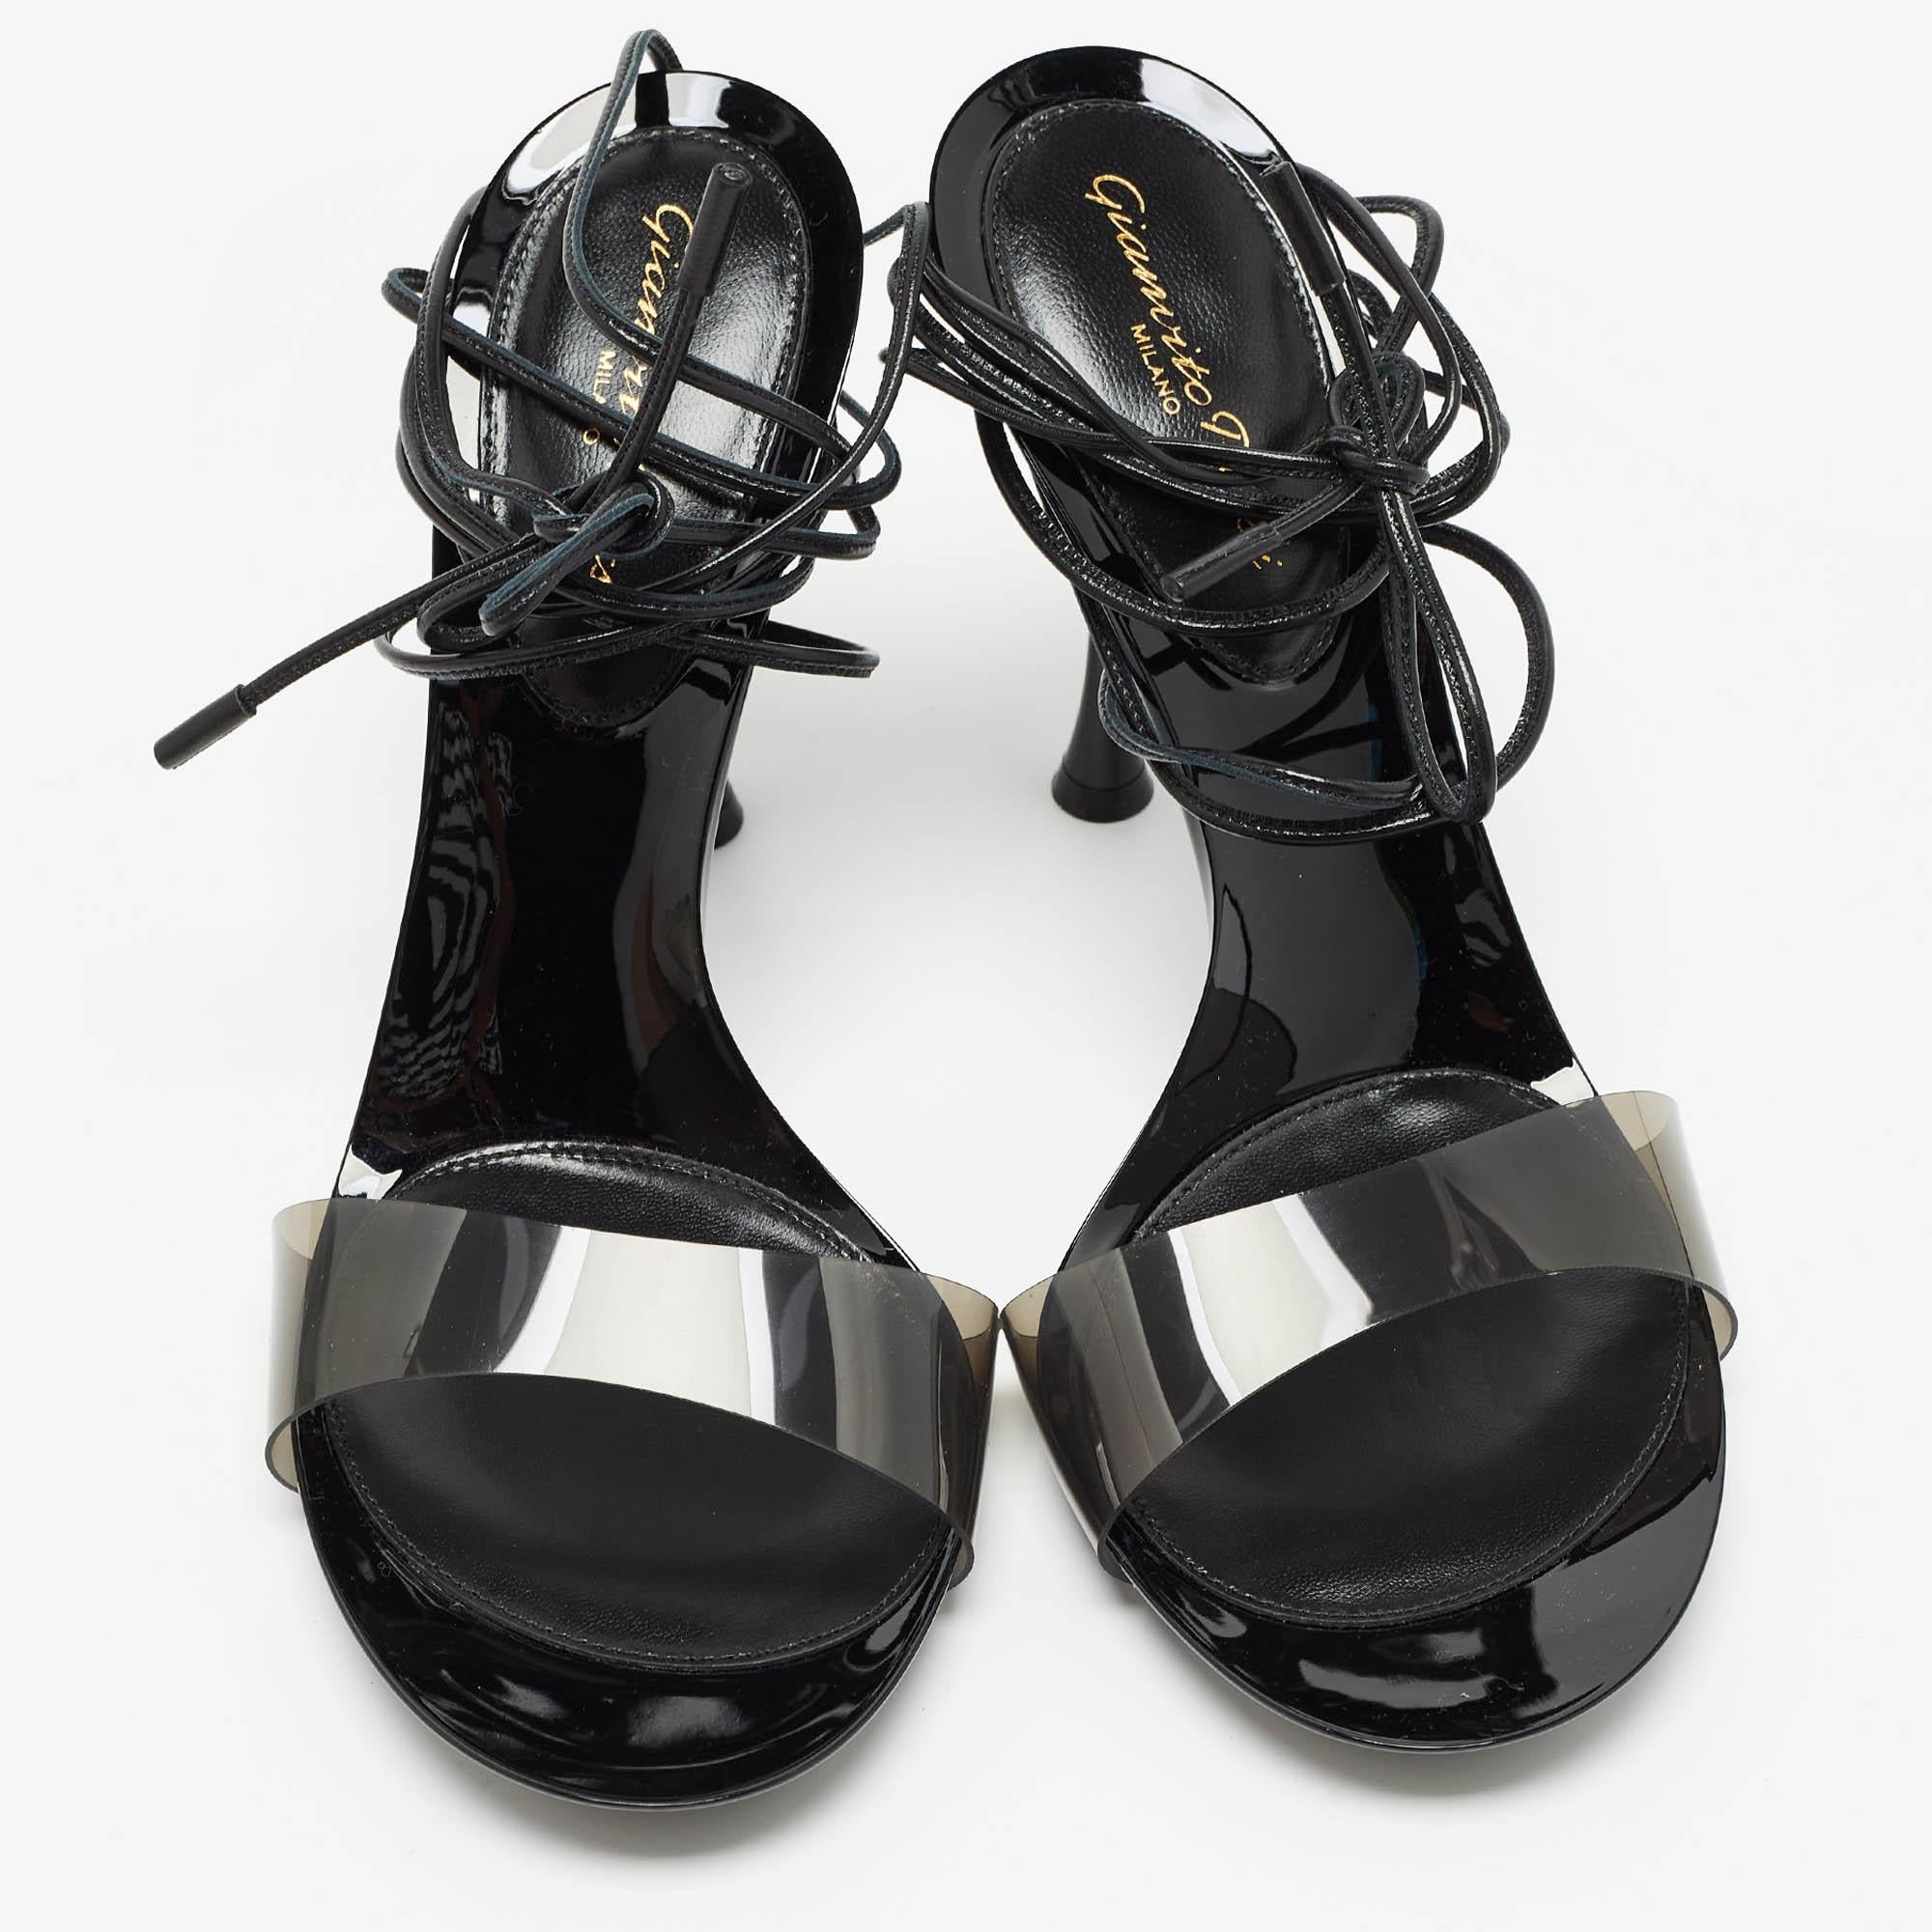 Conçues par Gianvito Rossi, ces sandales exquises associent harmonieusement le PVC transparent et le cuir souple, créant ainsi un contraste séduisant. Les délicats liens à la cheville ajoutent une touche de féminité, tandis que le design épuré